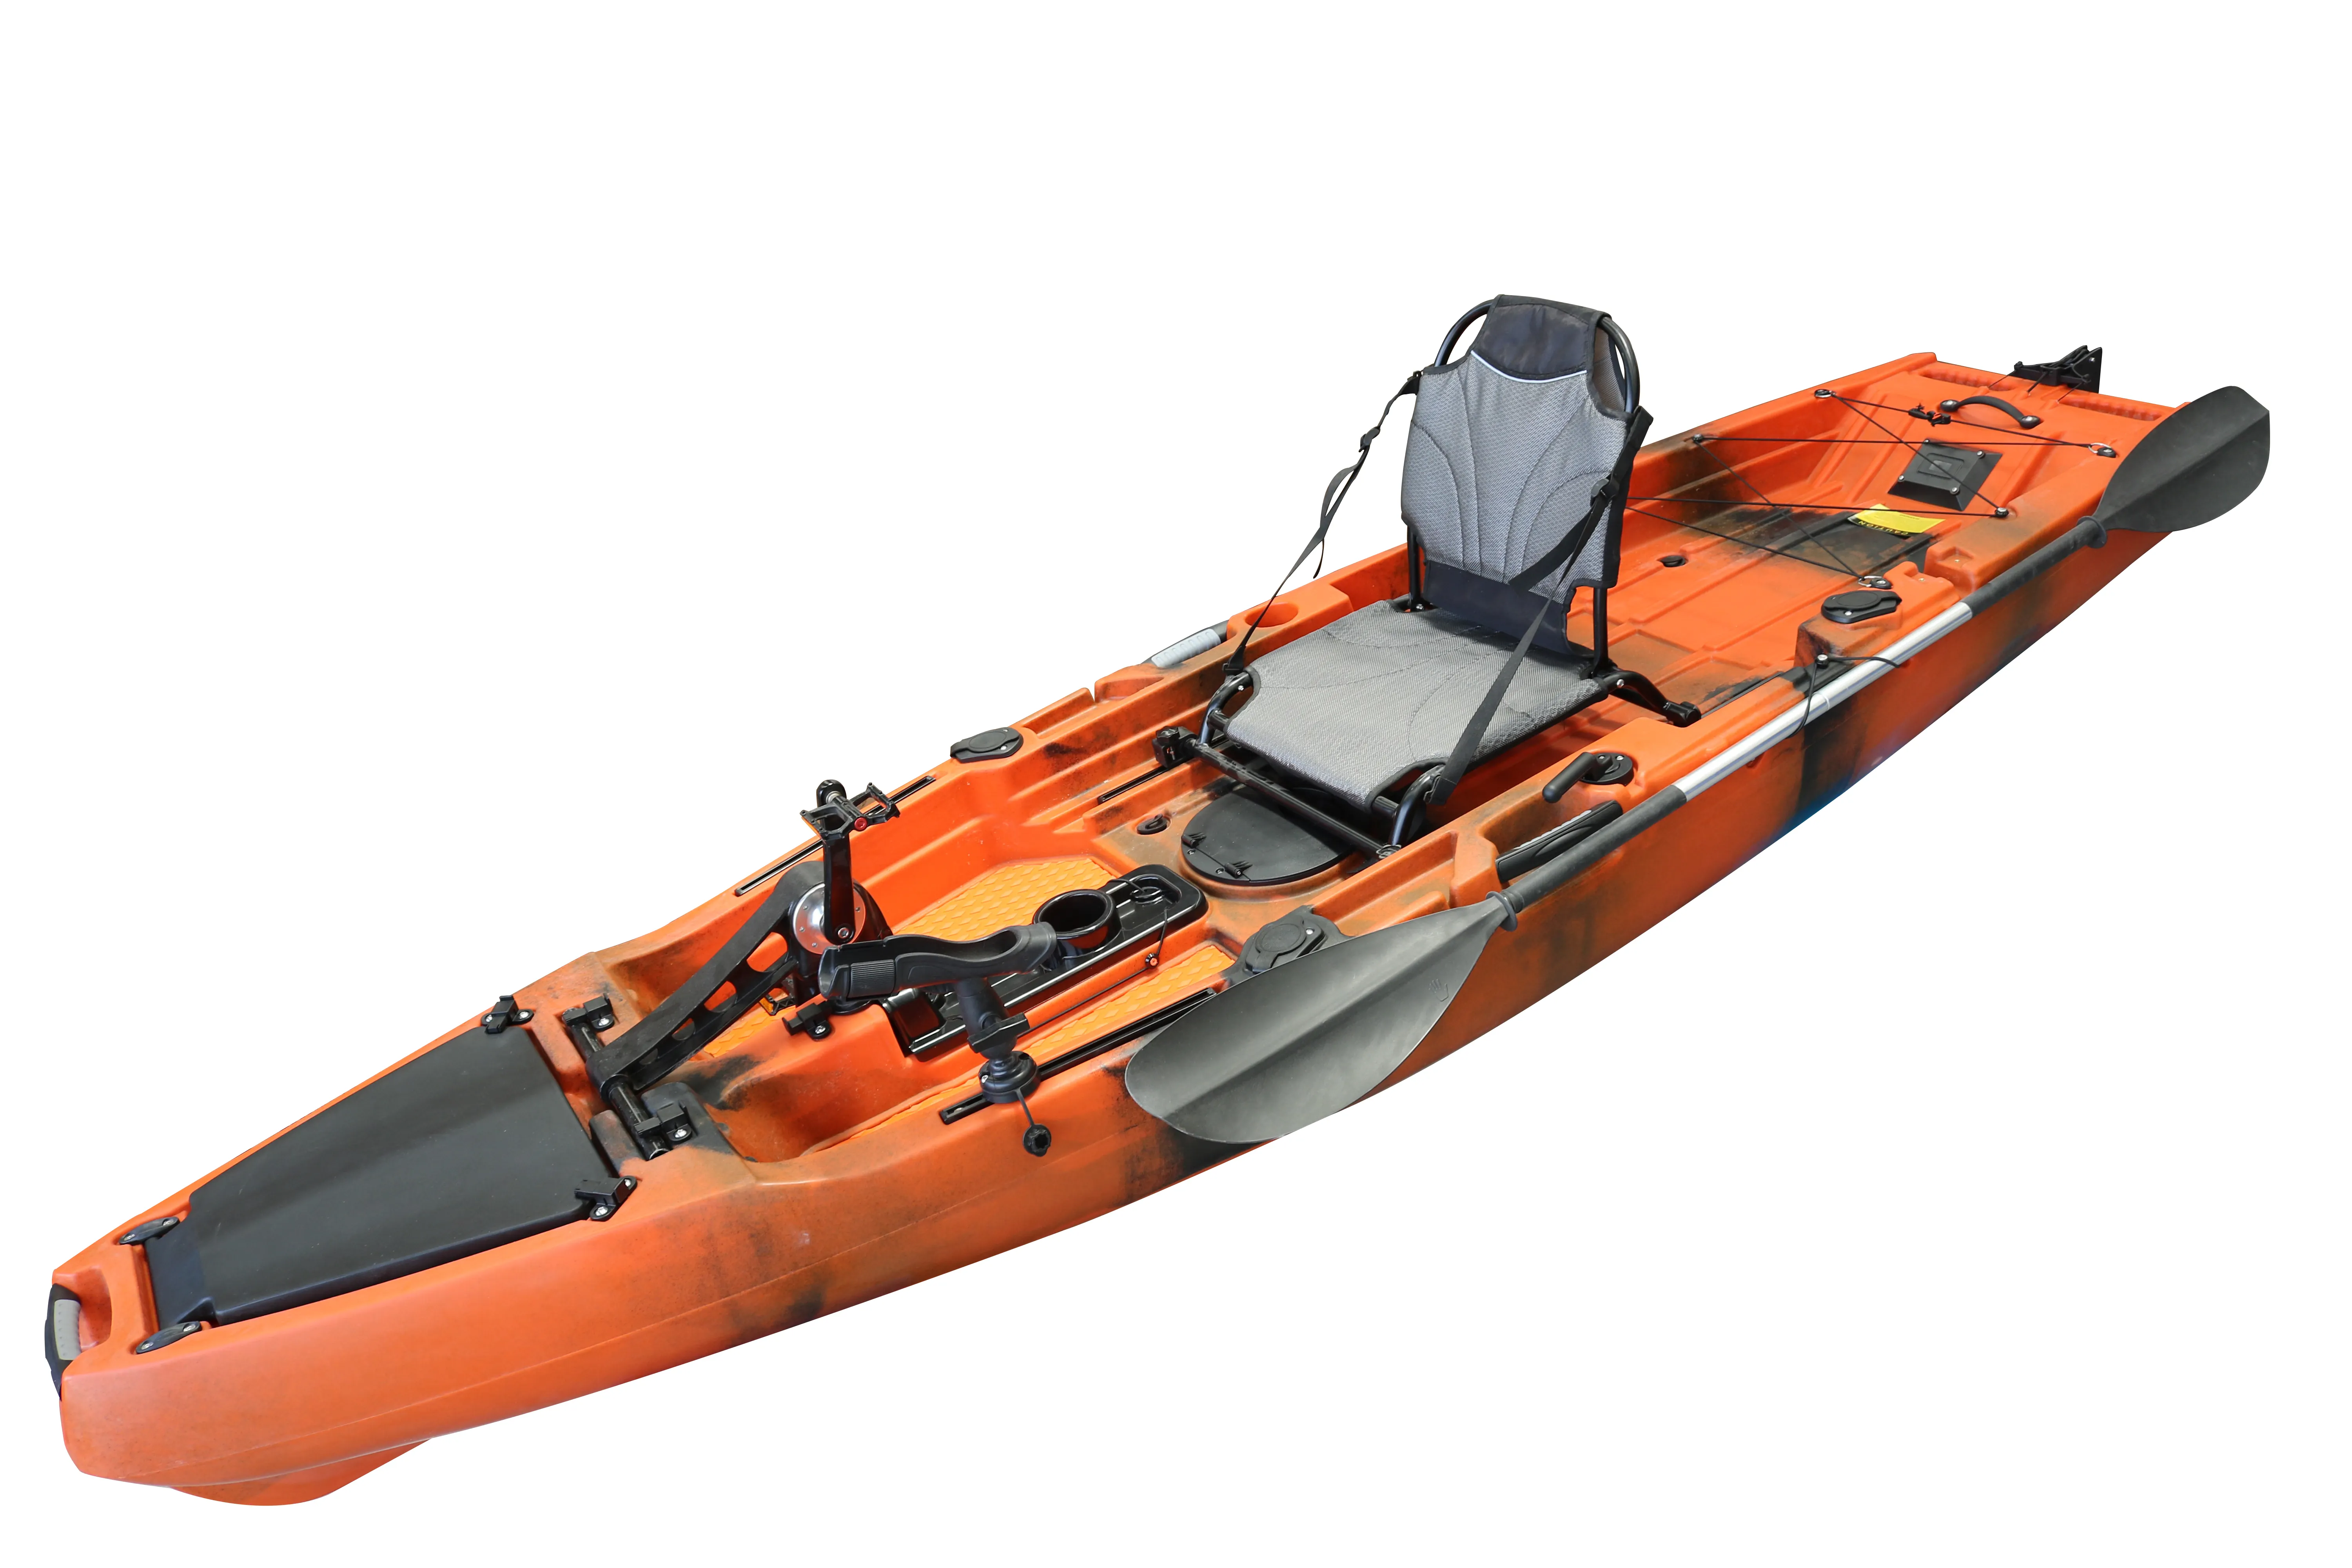 قارب صيد 10.5 قدم مقعد واحد يجلس على قمة قوارب الكاياك مع نظام محرك دواسة المروحة محرك كهربائي باس الأسماك معالجة الرياضات المائية